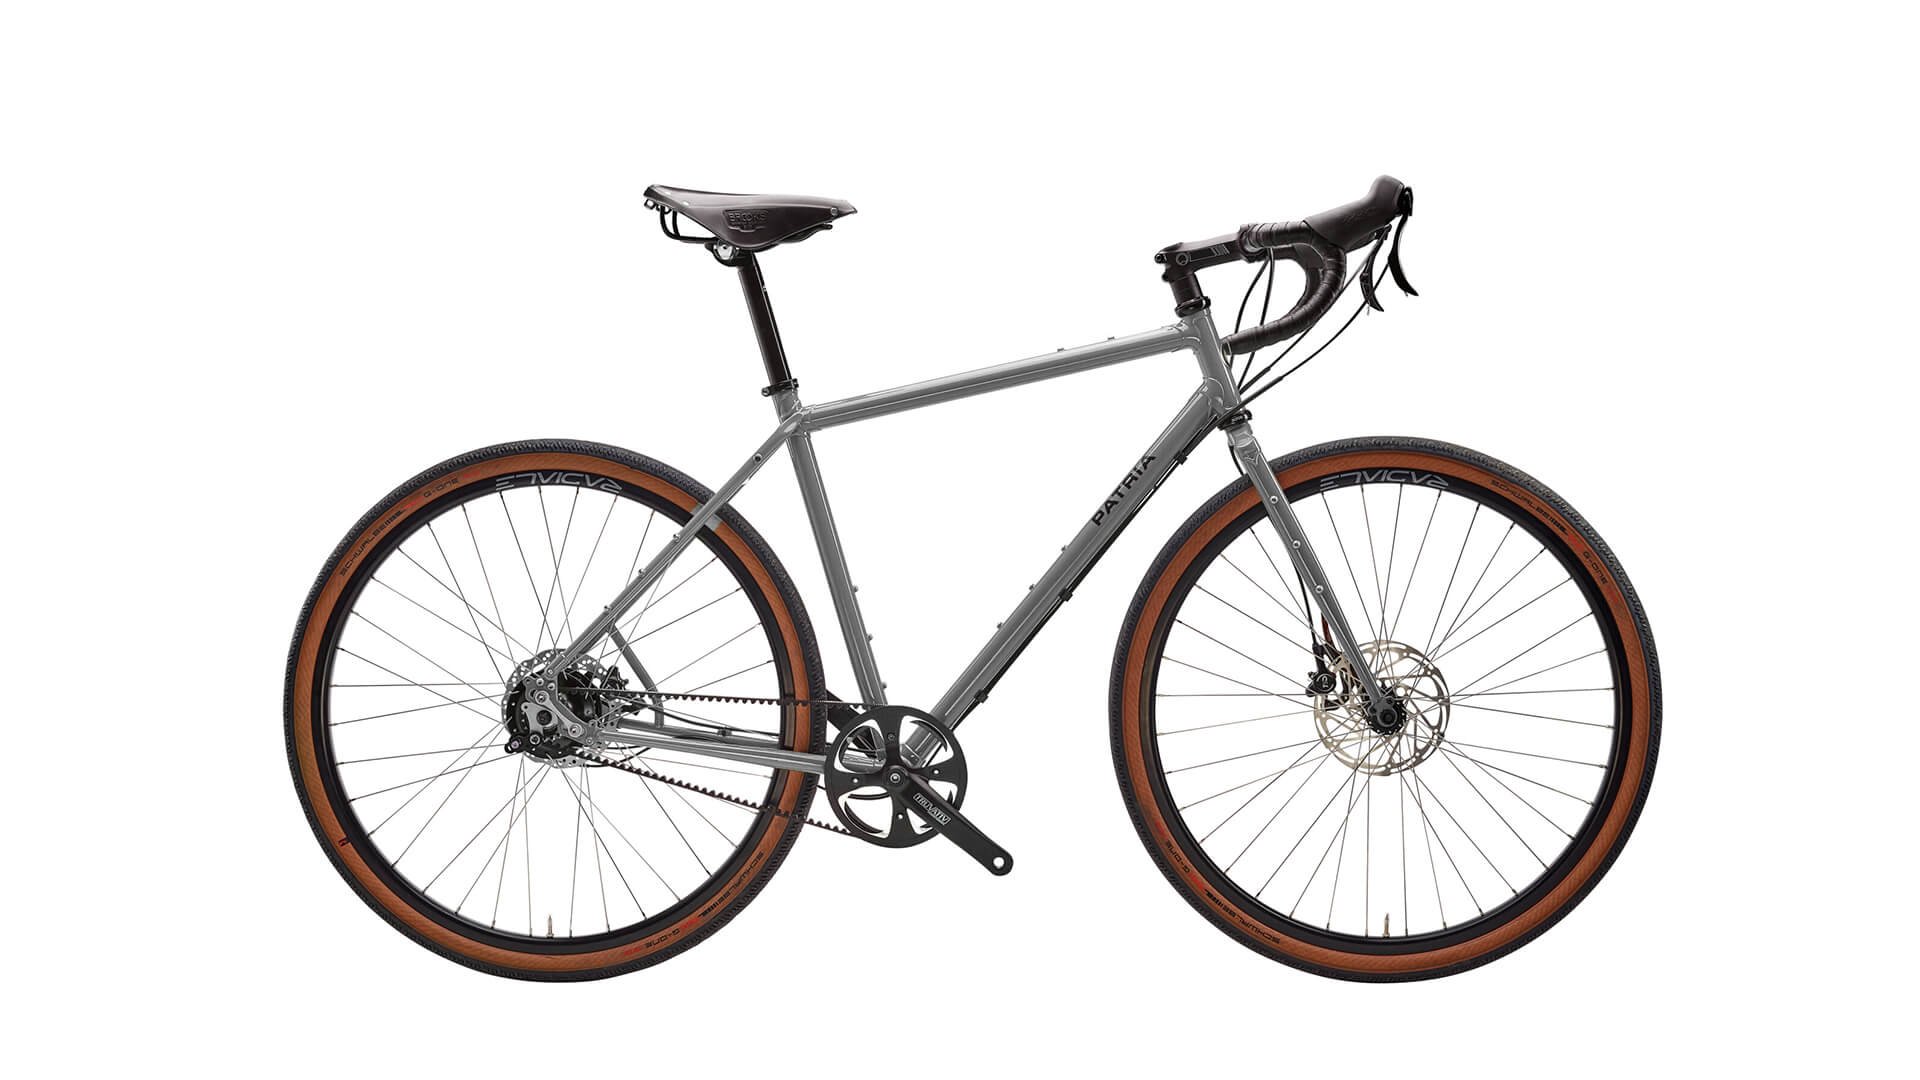 Vélo Gravel Tribos 28" avec cadre Diamant couleur argent métallisé et transmission Rohloff 14 vitesses